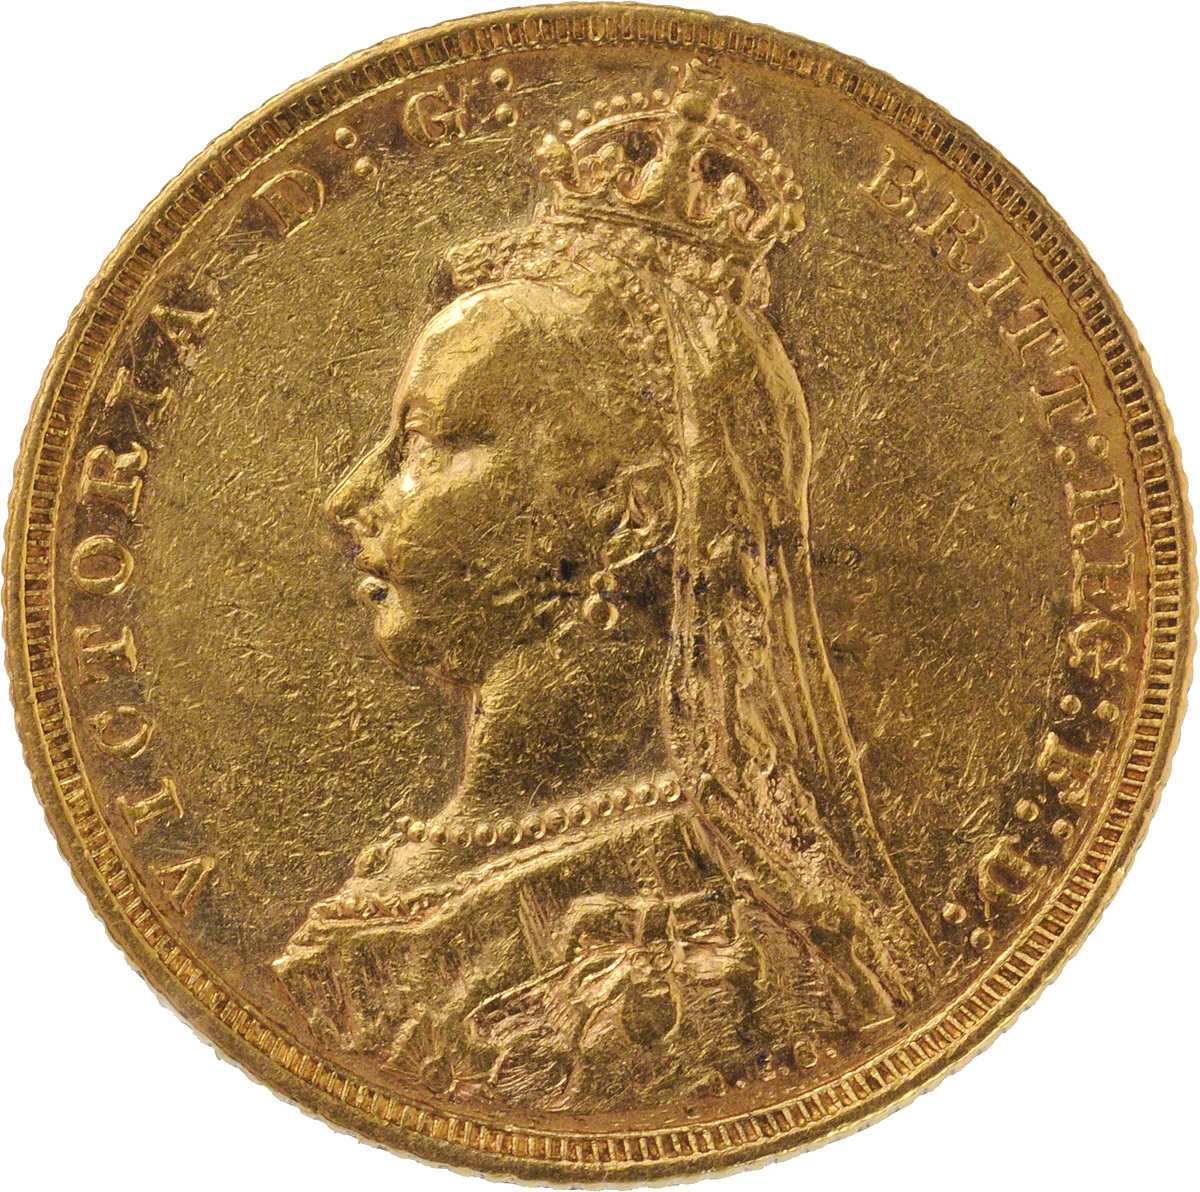 1888 Βικτώρια (Νομισματοκοπείο Μελβούρνης)